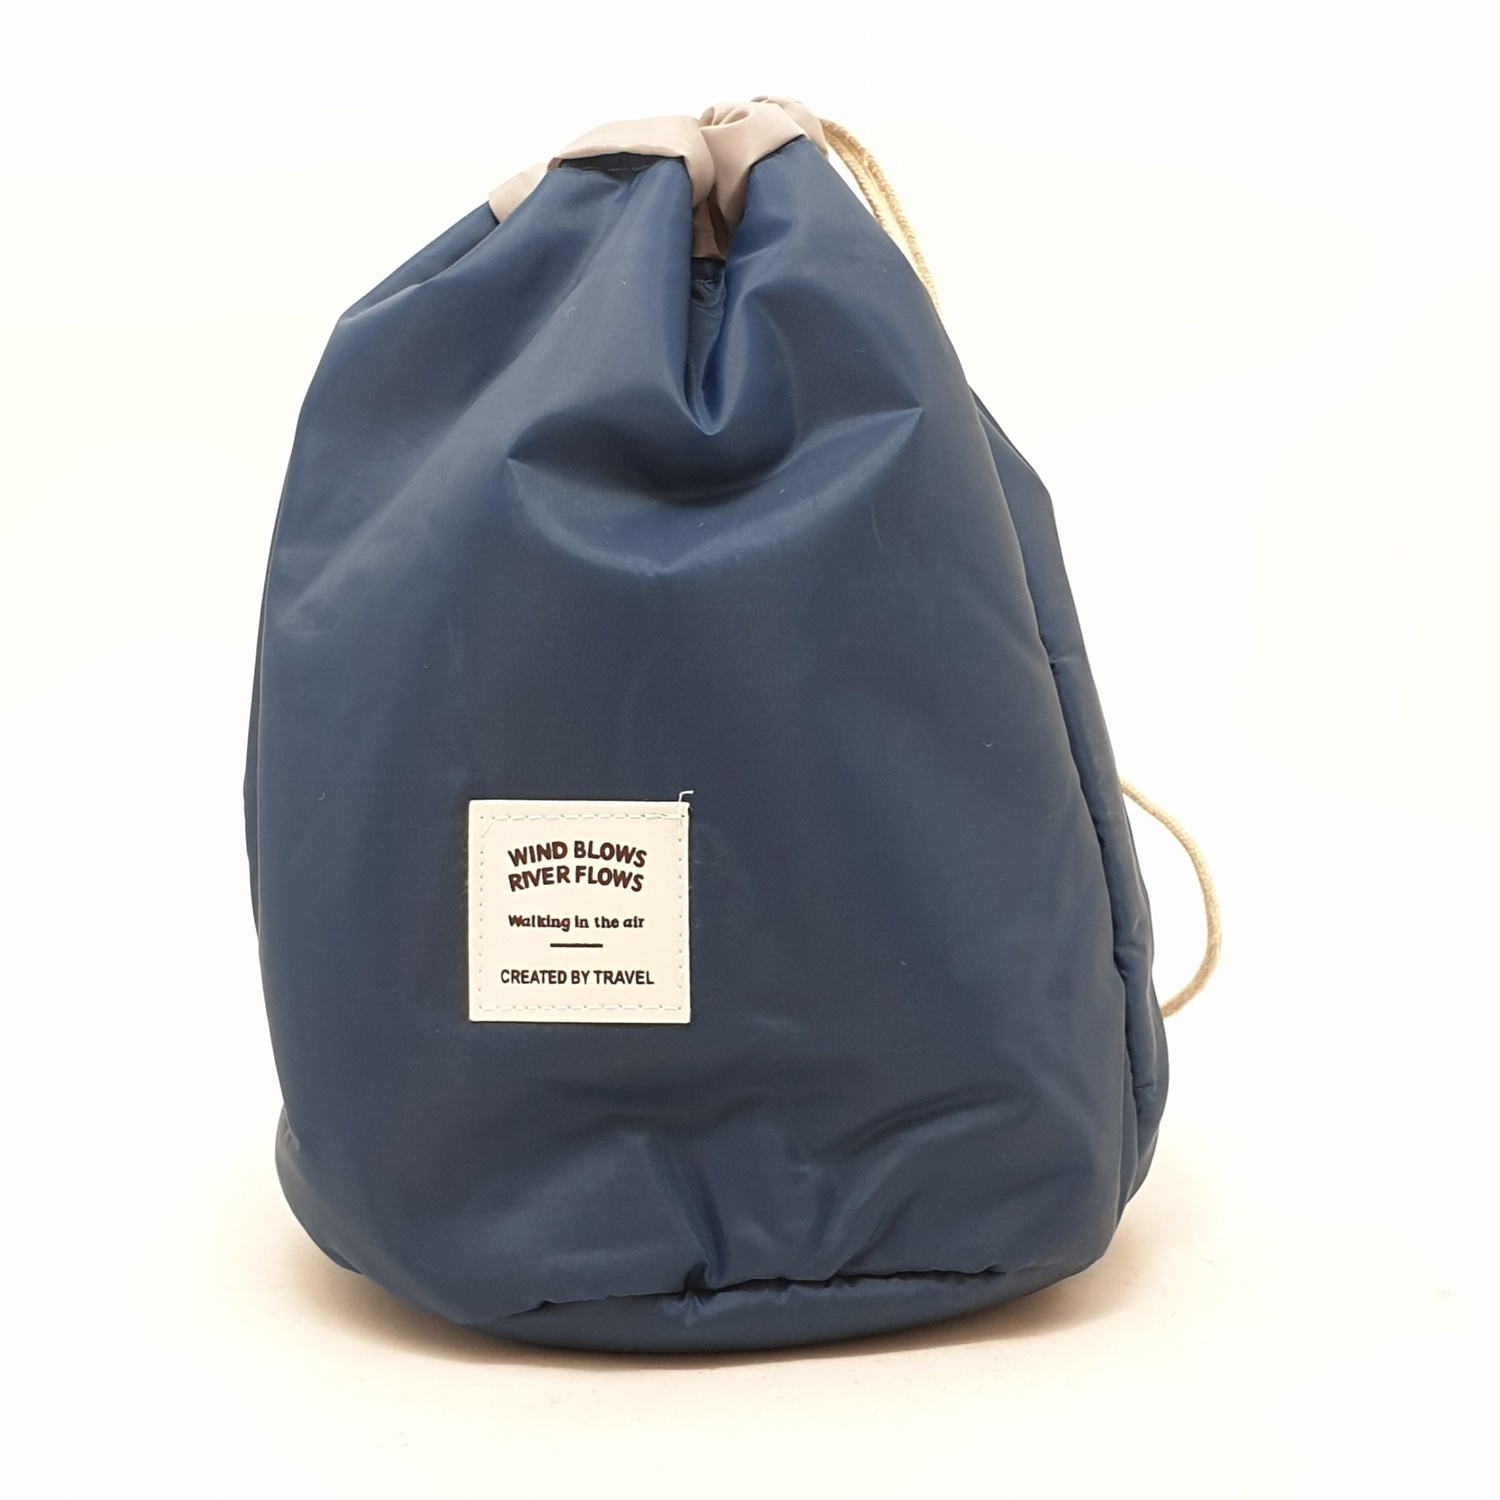 กระเป๋าจัดเก็บเครื่องสำอาง รุ่น ZRH-006-BB ขนาด Φ17x23 cm สีฟ้า